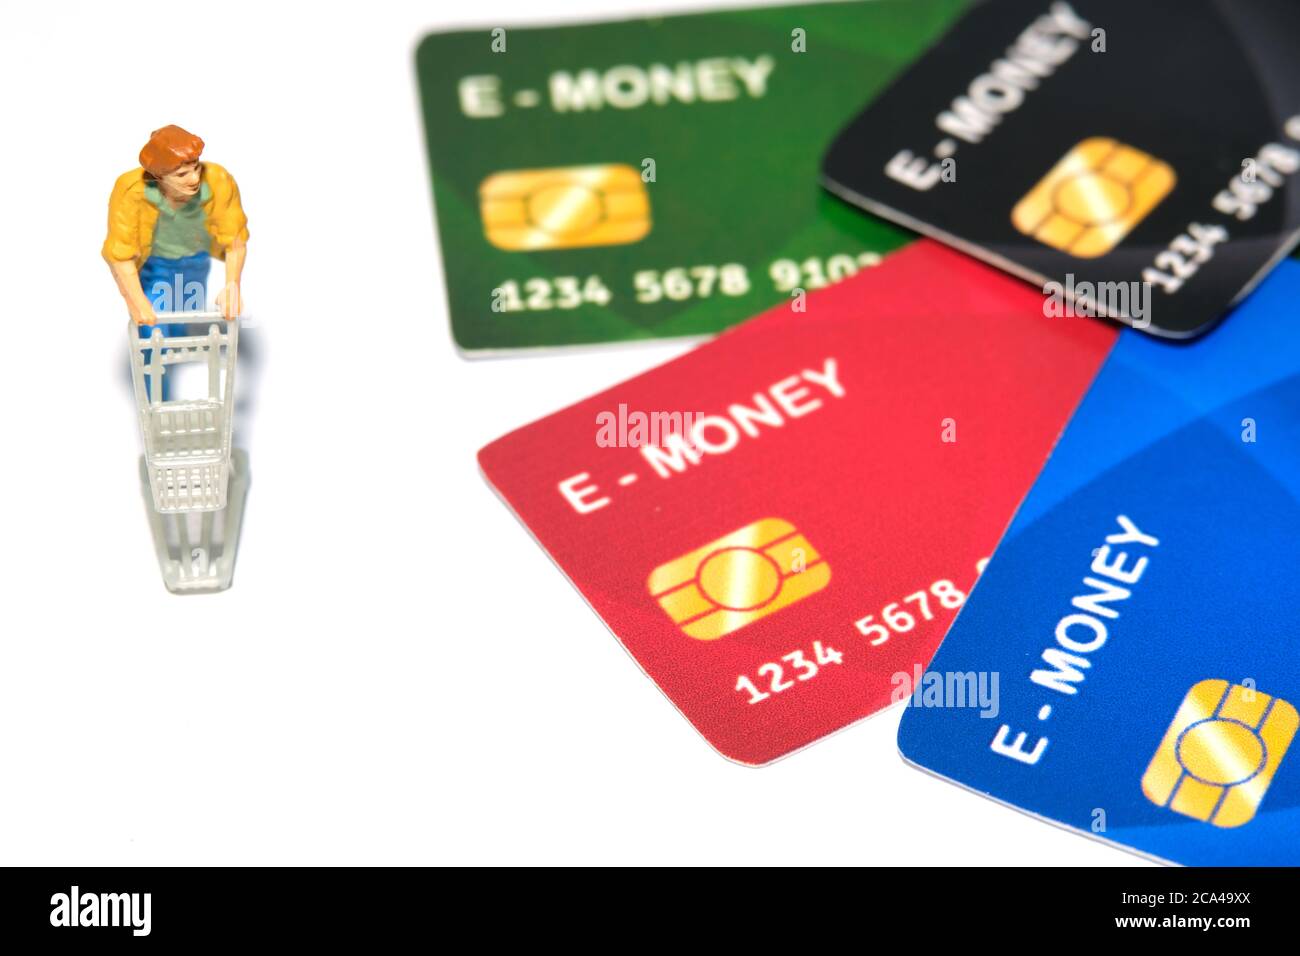 Kontaktlose Zahlung. Frauen gehen einkaufen und zahlen mit elektronischem Geld (E-Geld). Miniatur Menschen Figuren Spielzeug konzeptionelle Fotografie. Stockfoto